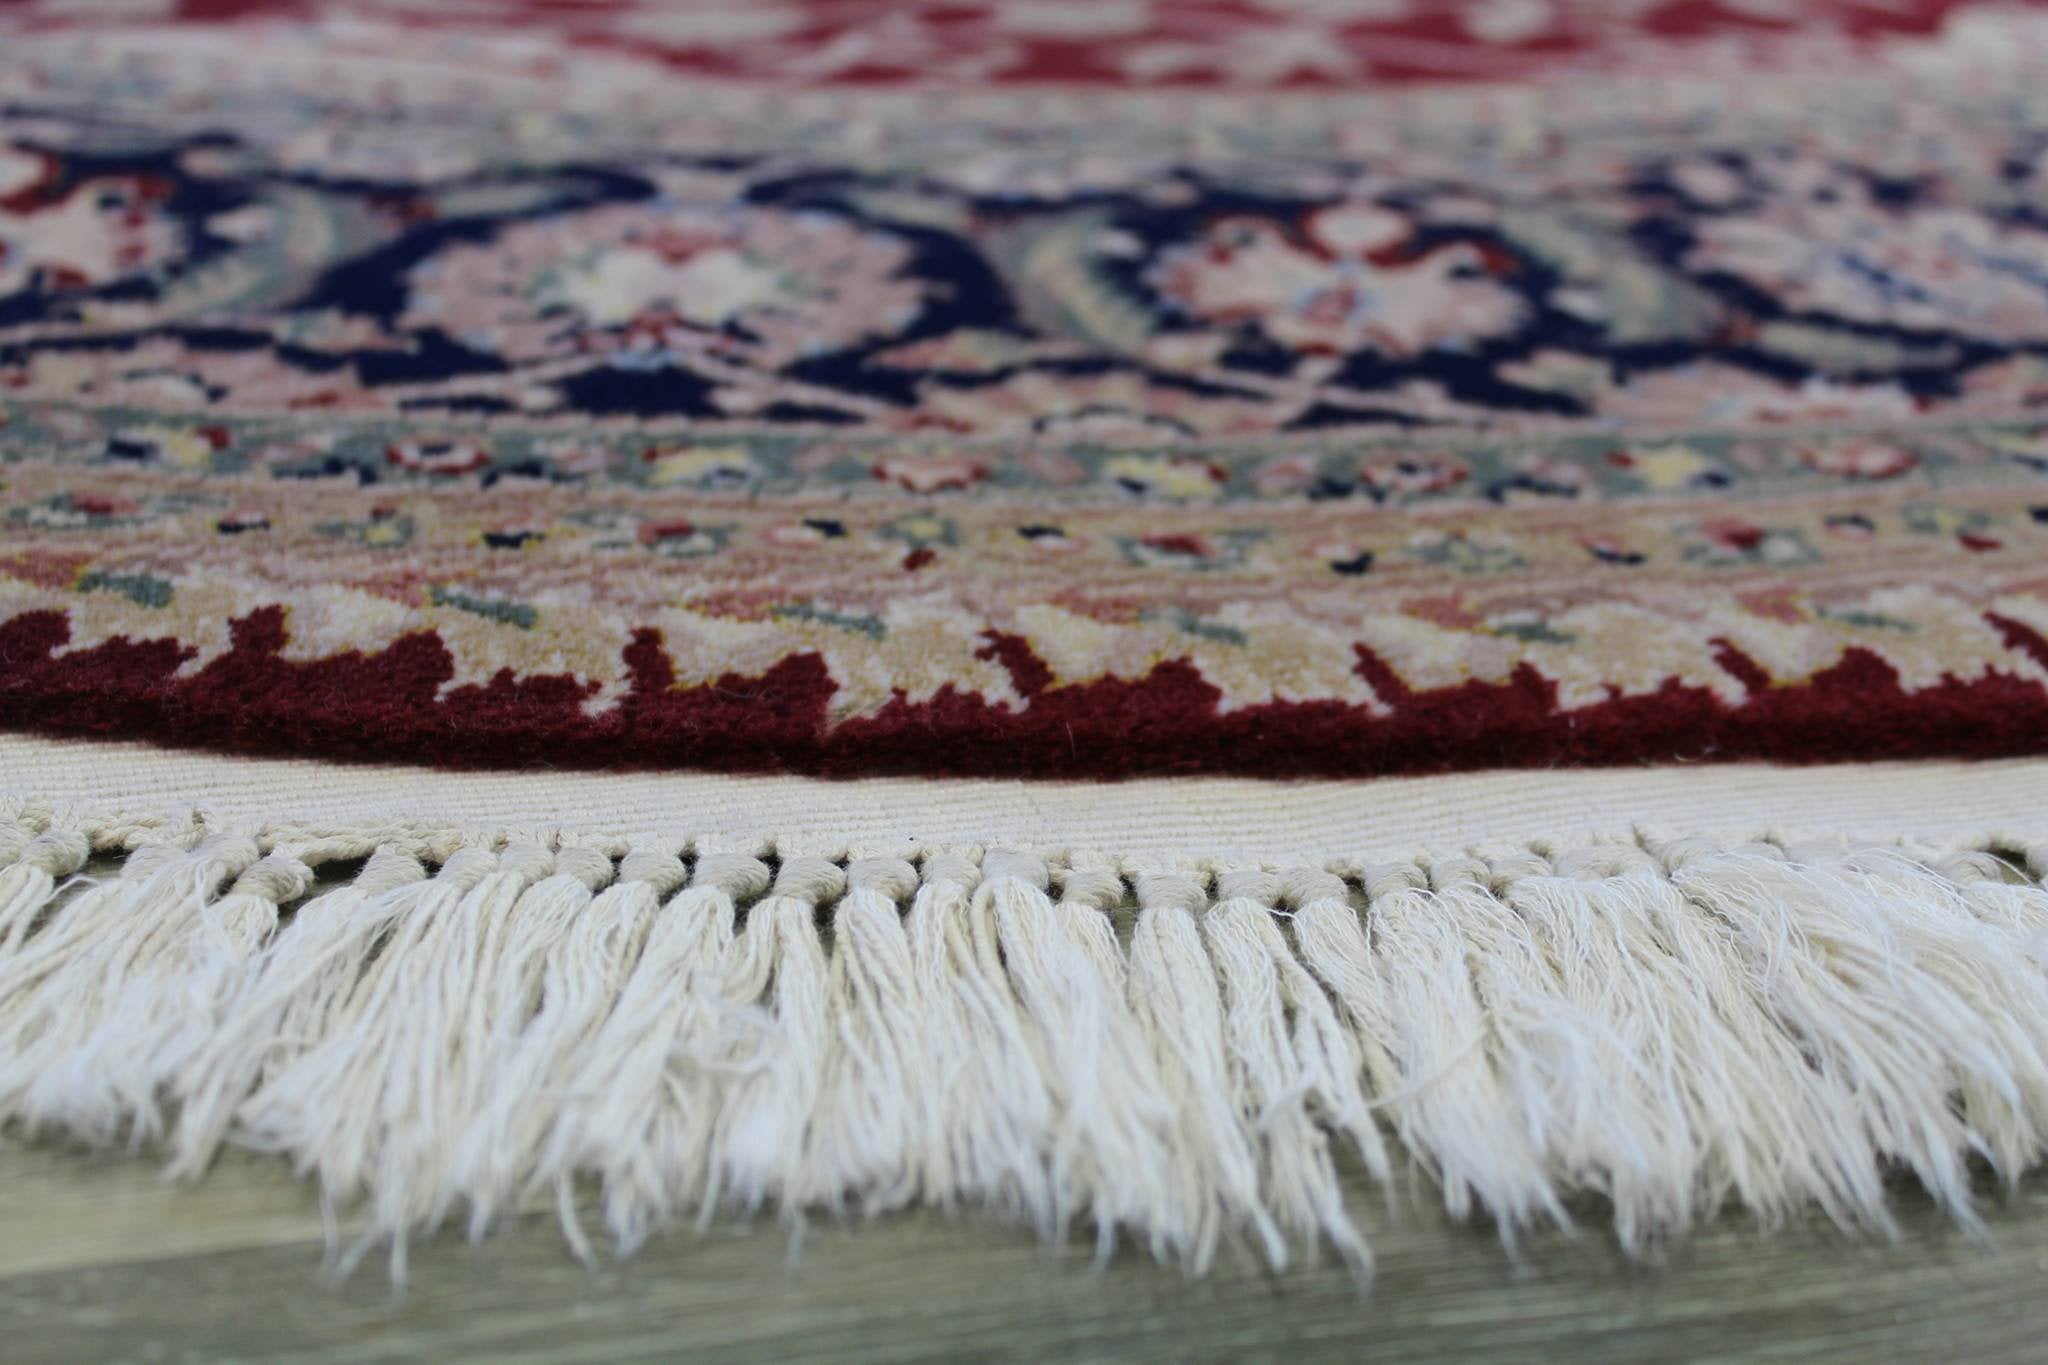 Tabriz Handwoven Traditional Rug, J62209